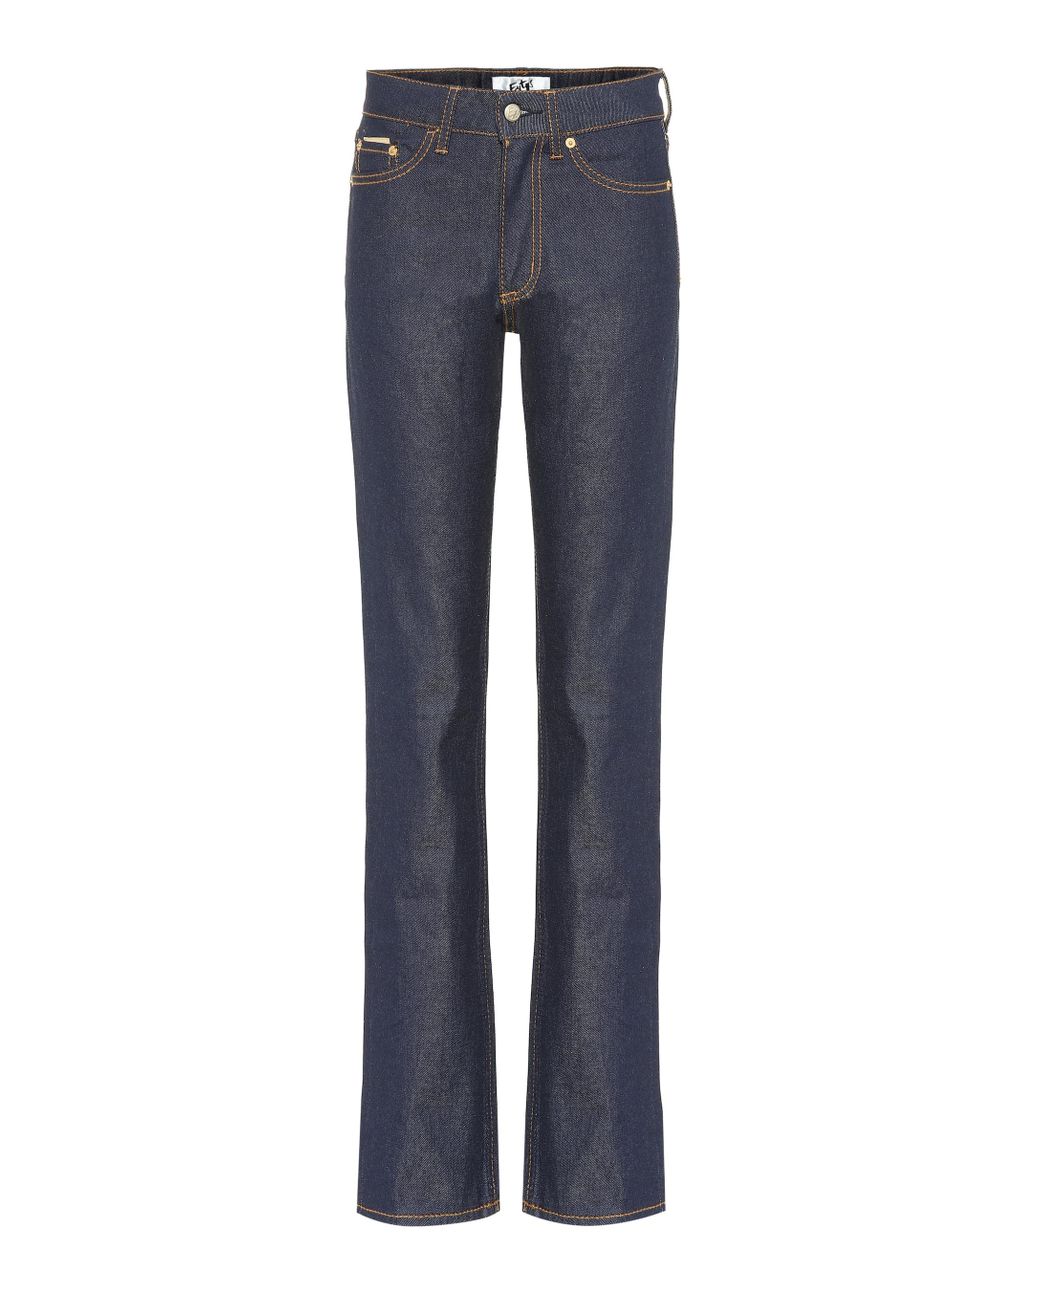 Eytys Denim Cypress Cali Straight Jeans in Blue - Lyst